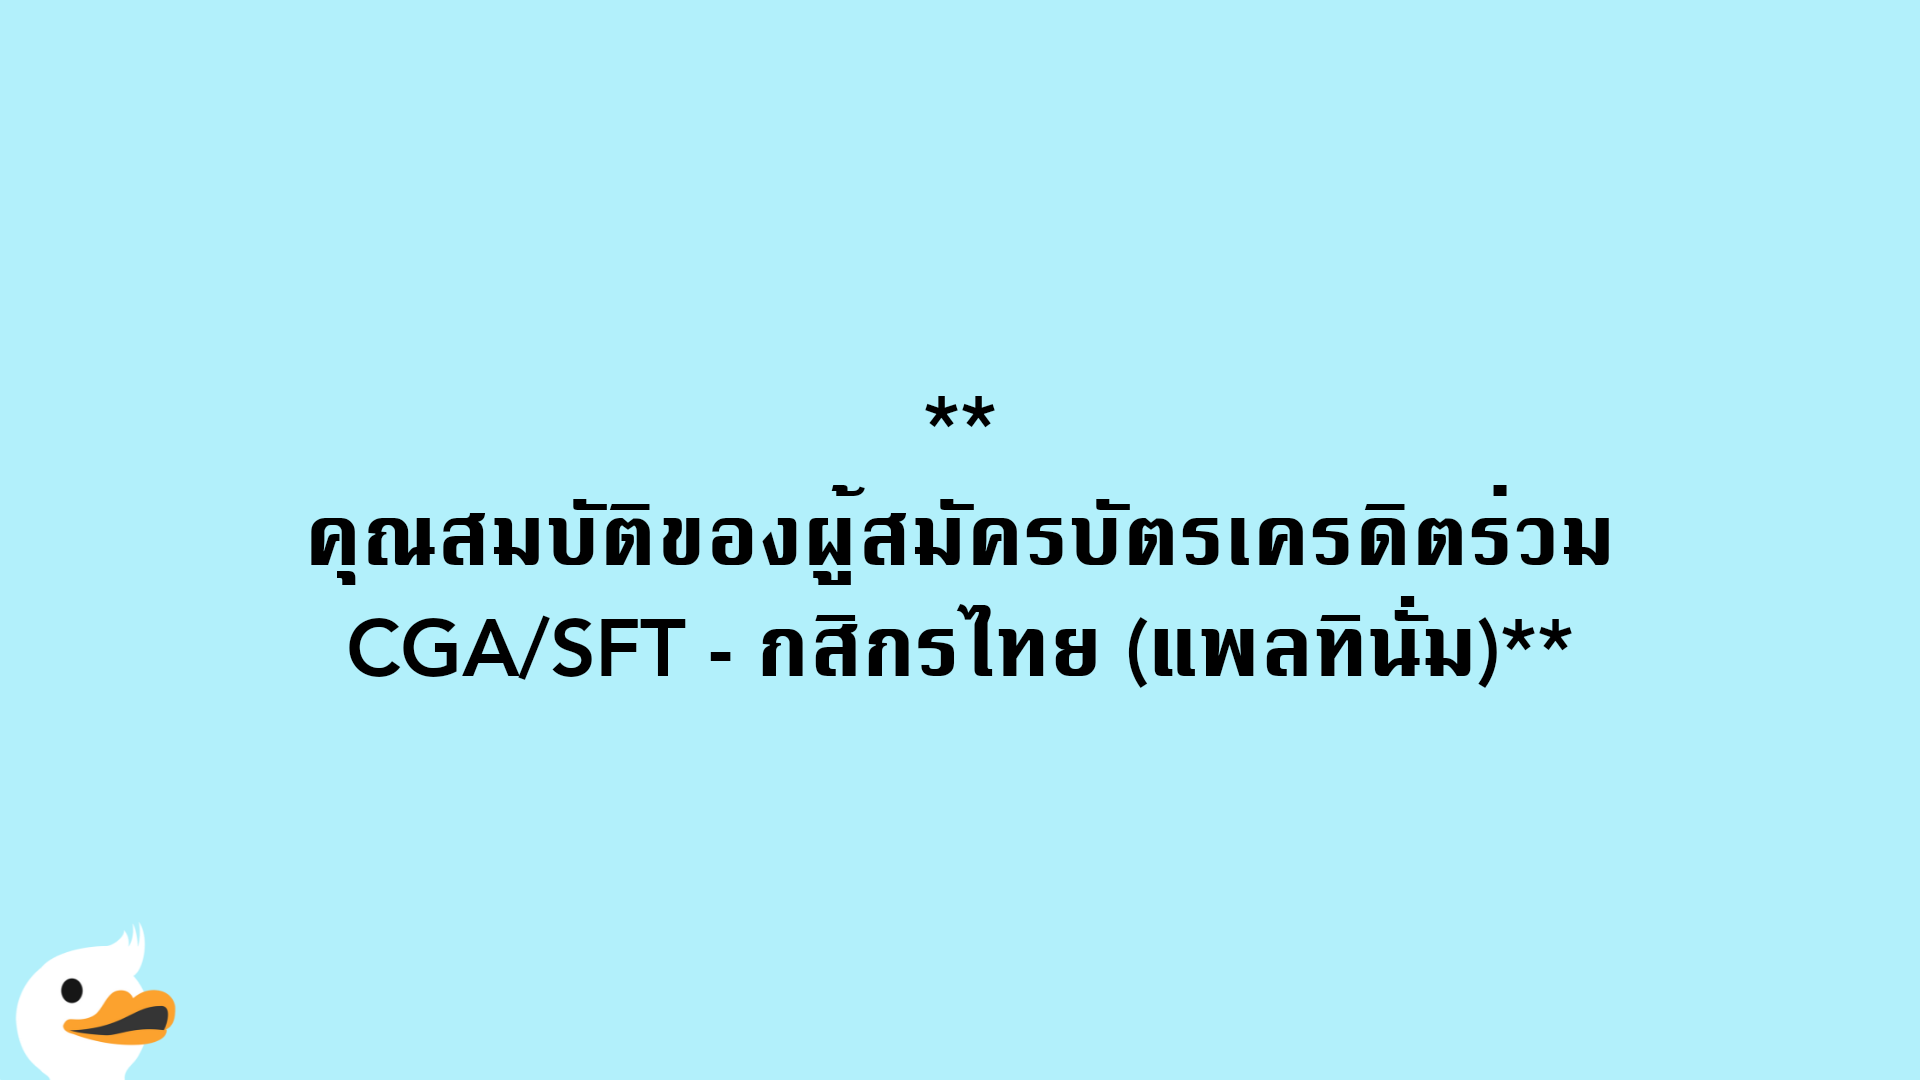 คุณสมบัติของผู้สมัครบัตรเครดิตร่วม CGA/SFT - กสิกรไทย (แพลทินั่ม)